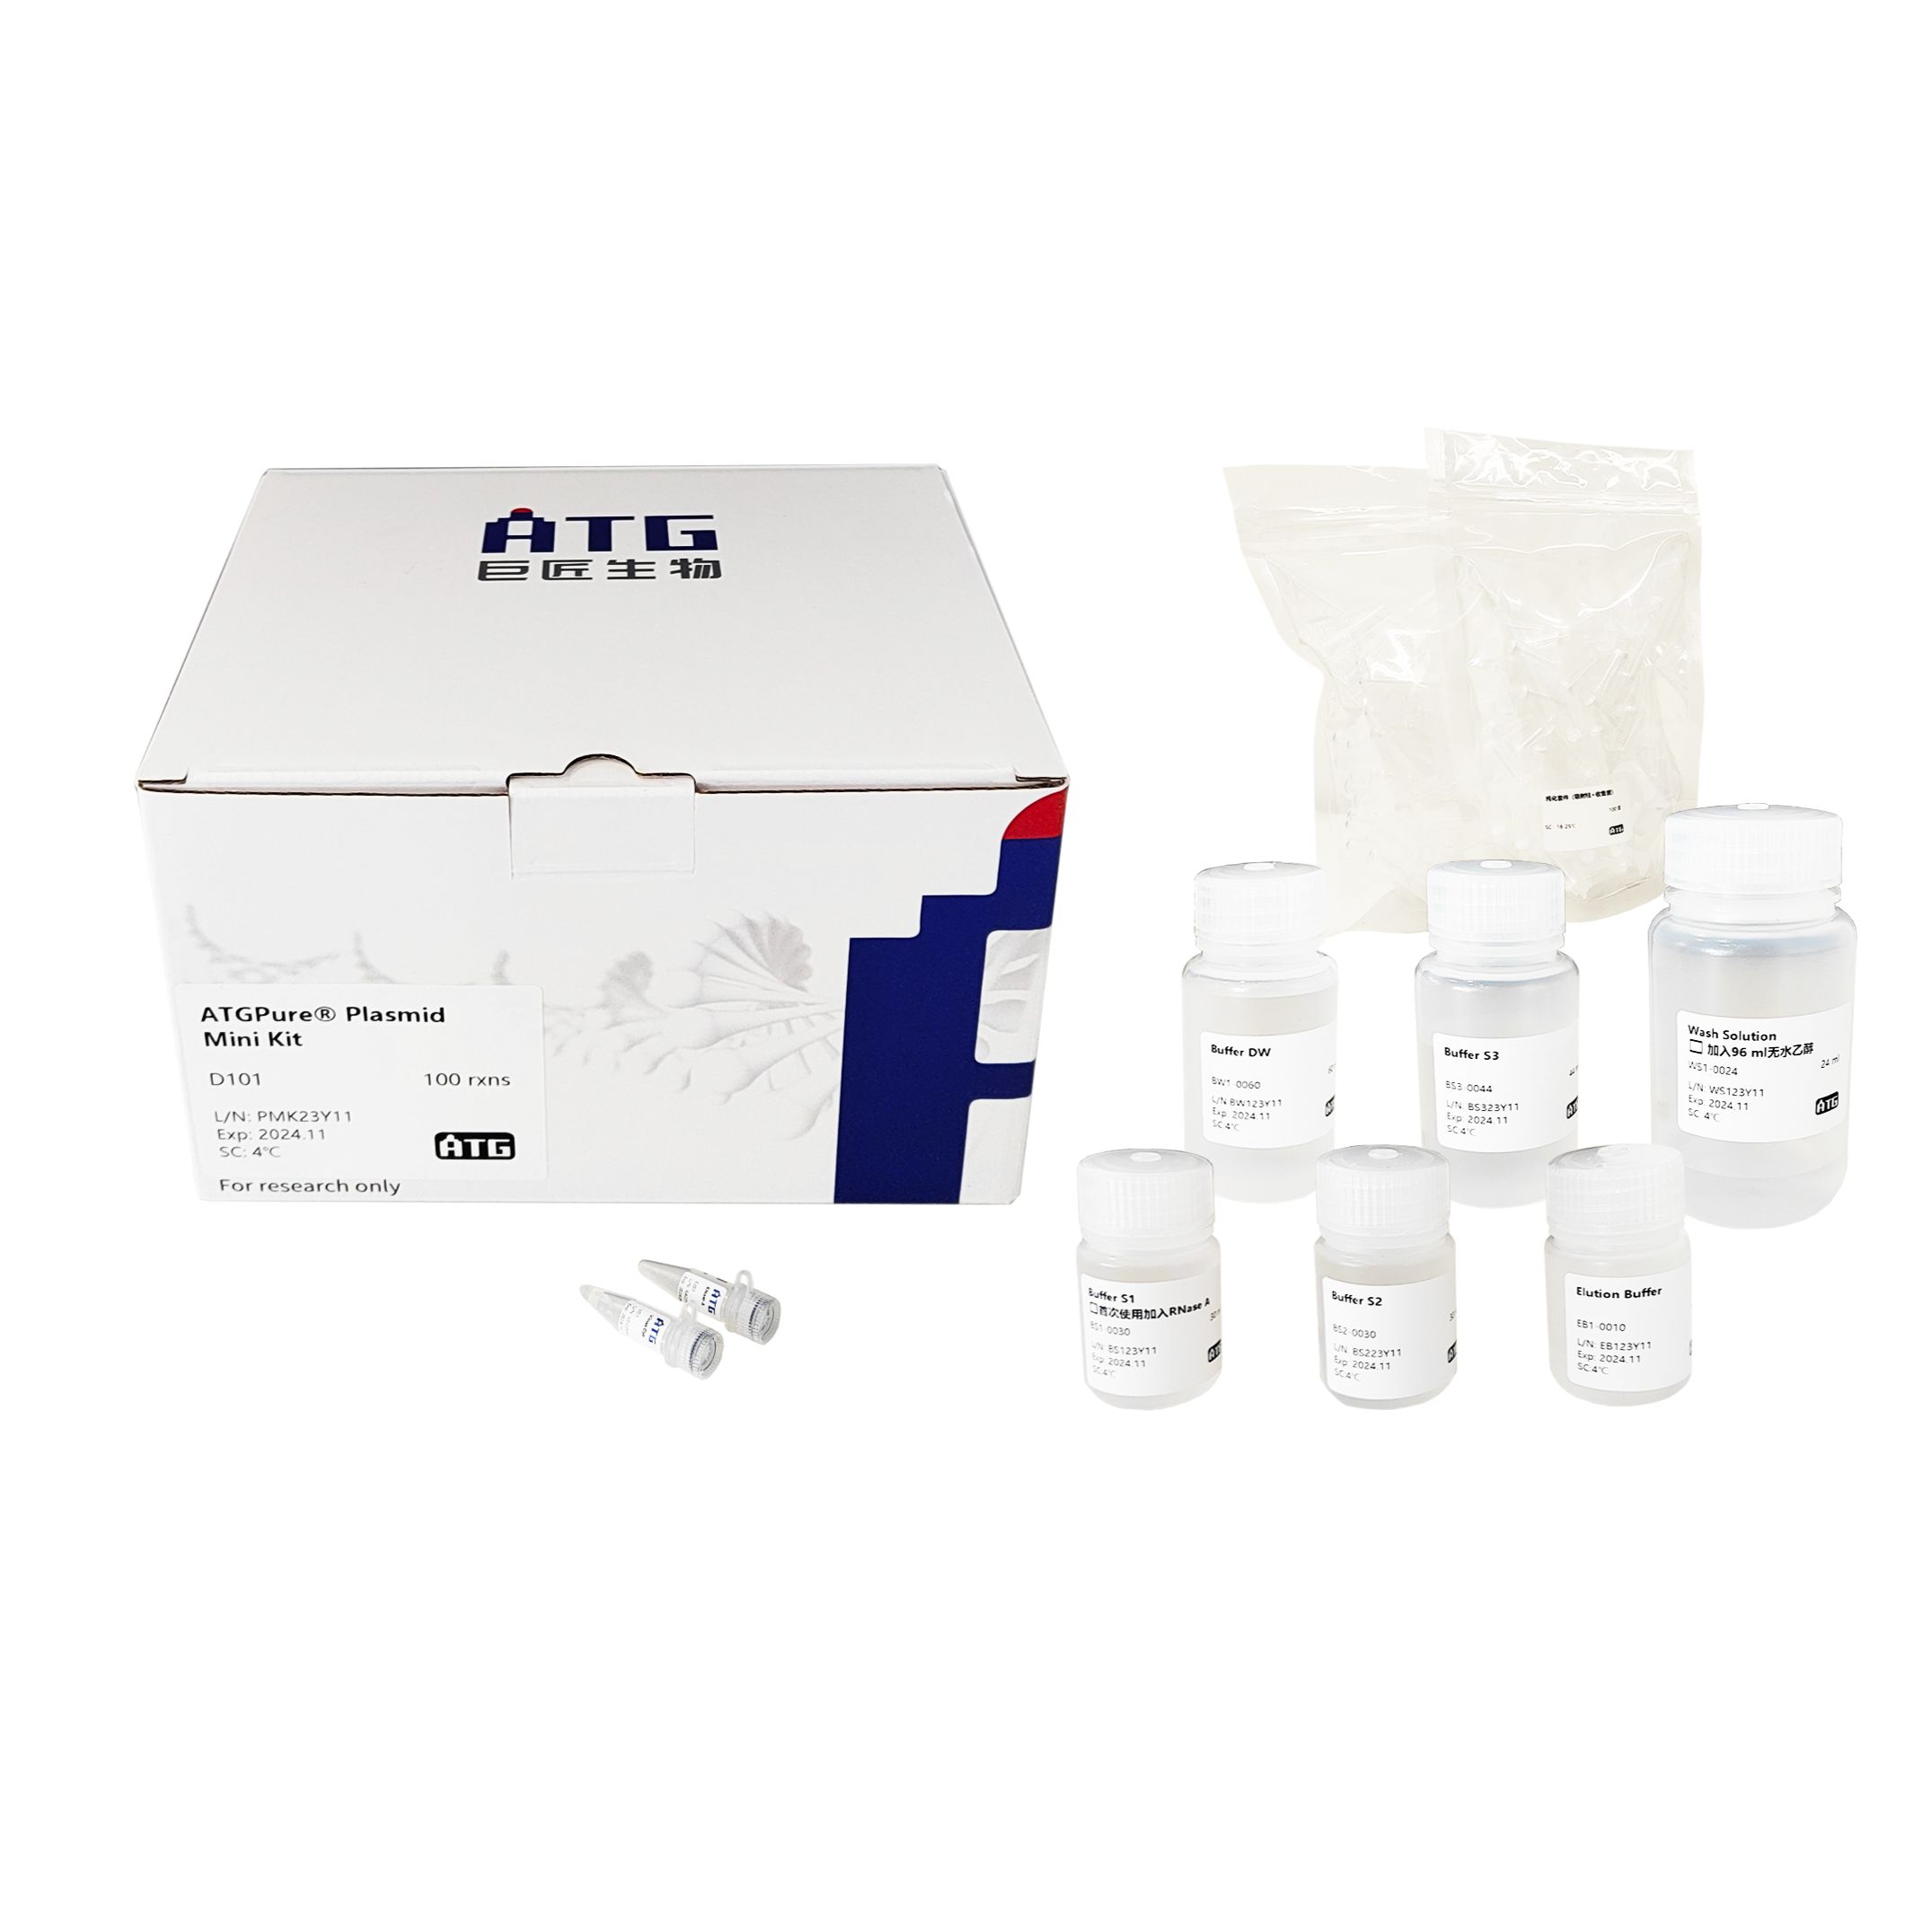 ATGPure® Plasmid Mini Kit 质粒小提试剂盒 (质粒提取效率高)